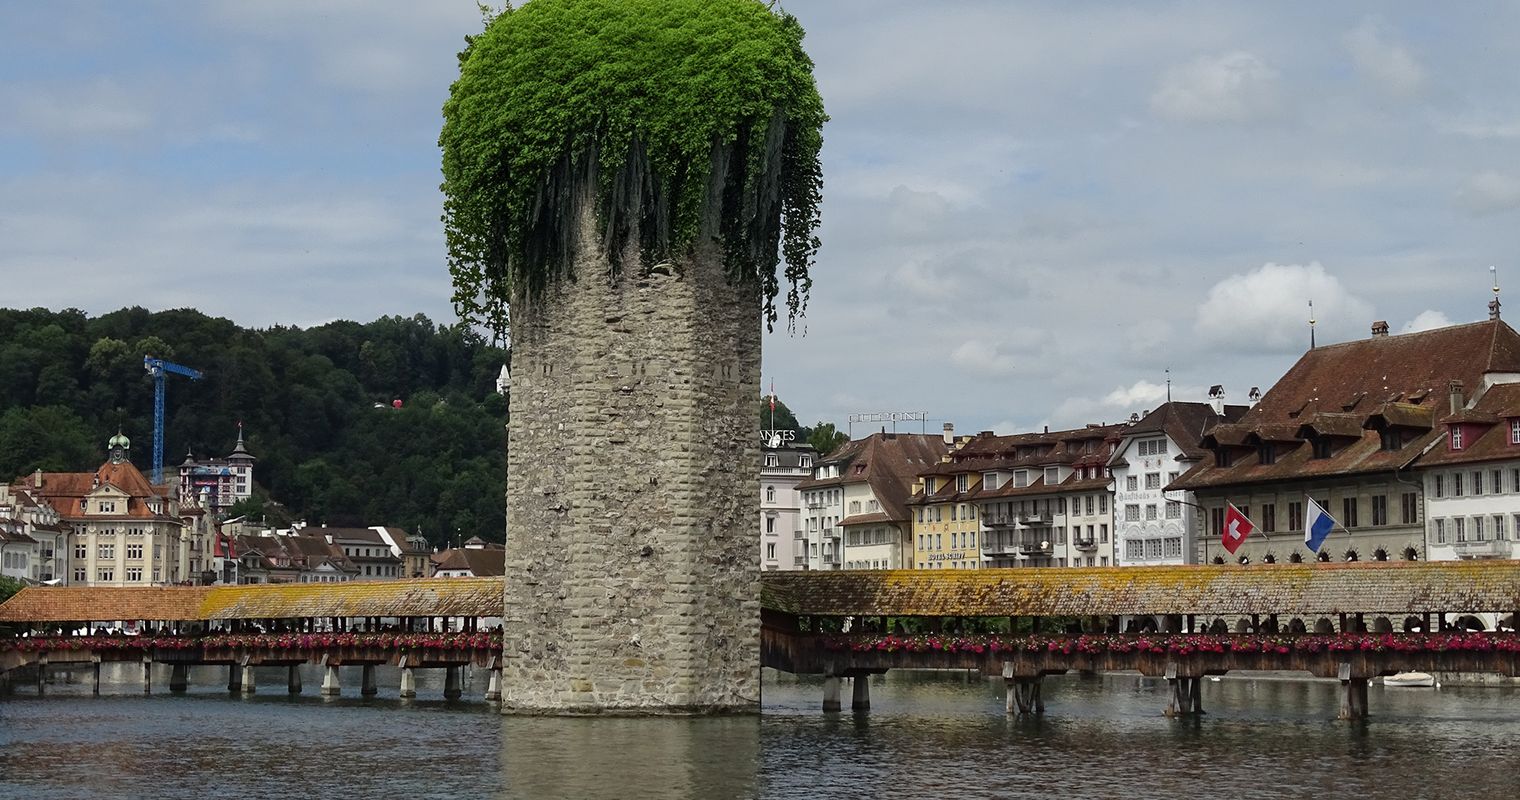 Kein Platz für mehr Pflanzen in Luzern? Denkste